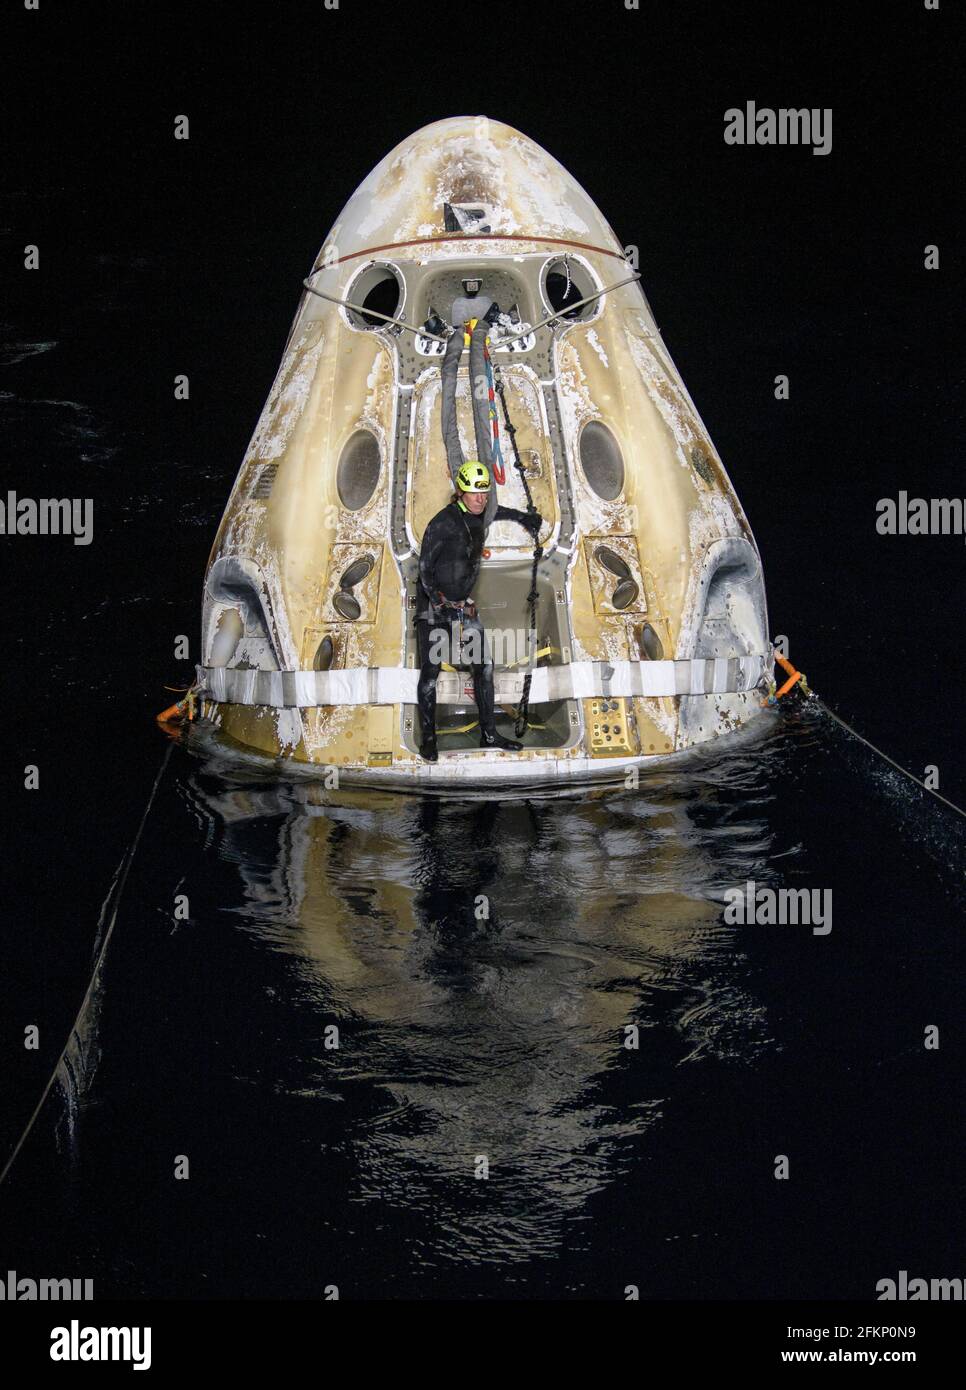 Die Support-Teams arbeiten um das Raumschiff SpaceX Crew Dragon Resilience, kurz nachdem es mit den NASA-Astronauten Mike Hopkins, Shannon Walker und Victor Glover und dem Astronauten der Japan Aerospace Exploration Agency (JAXA), Soichi Noguchi, an Bord im Golf von Mexiko vor der Küste von Panama City, Florida, gelandet ist, am Sonntag, 2. Mai 2021. Die NASA-Mission SpaceX Crew-1 war der erste Rundflug der Raumsonde SpaceX Crew Dragon und der Falcon 9-Rakete mit Astronauten zur Internationalen Raumstation im Rahmen des Commercial Crew Program der Agentur. Bildnachweis: (NASA/Bill Ingalls) Bitte beachten: Gebühren c Stockfoto